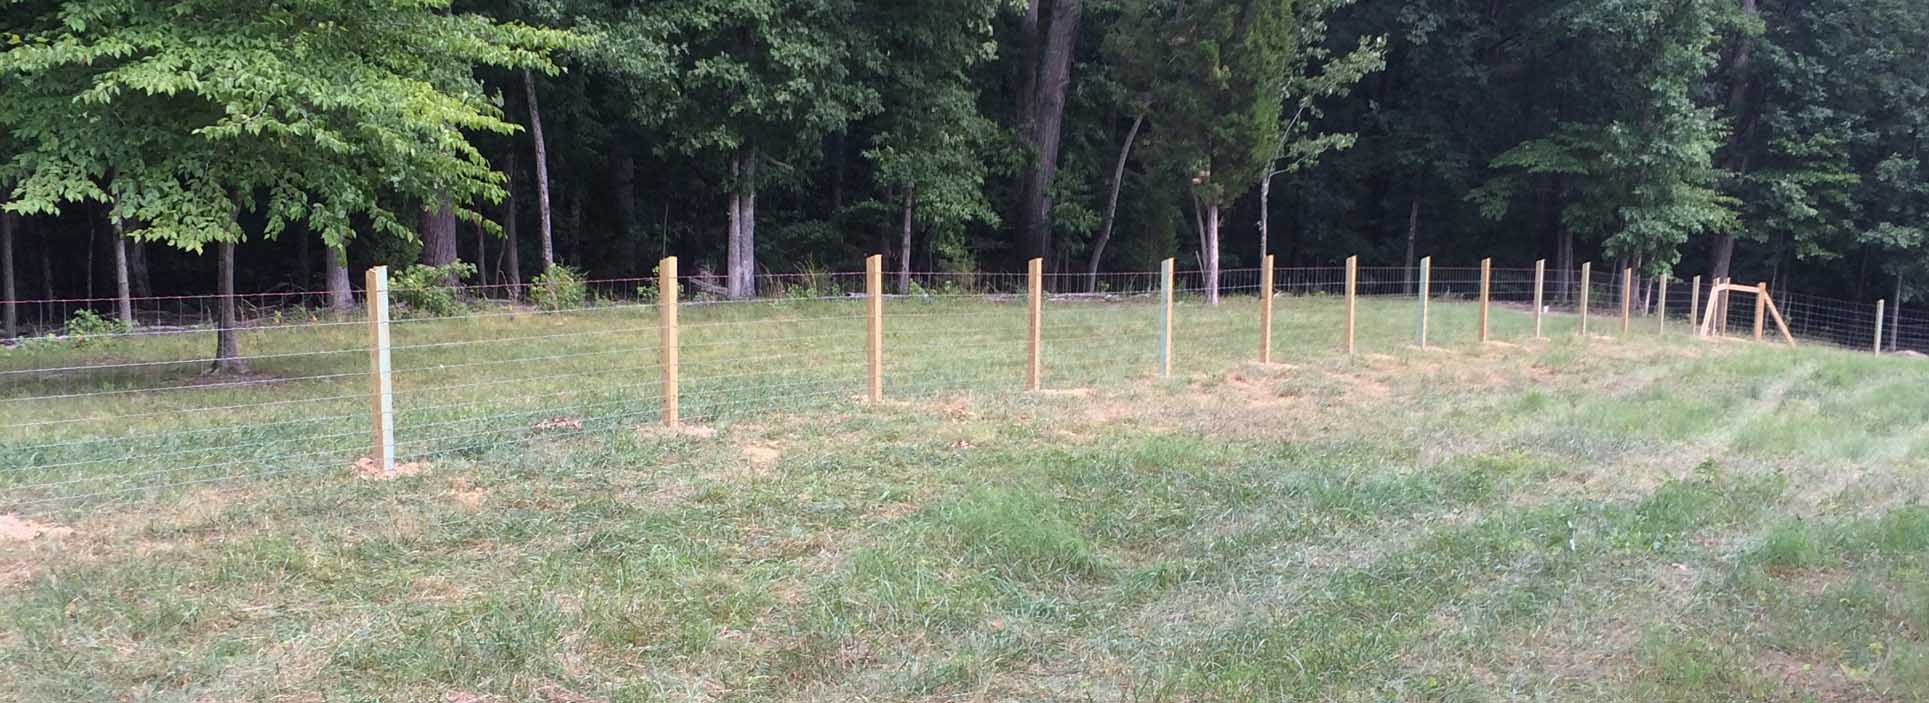 Farm fencing North Carolina | SE Agricultural Fencing